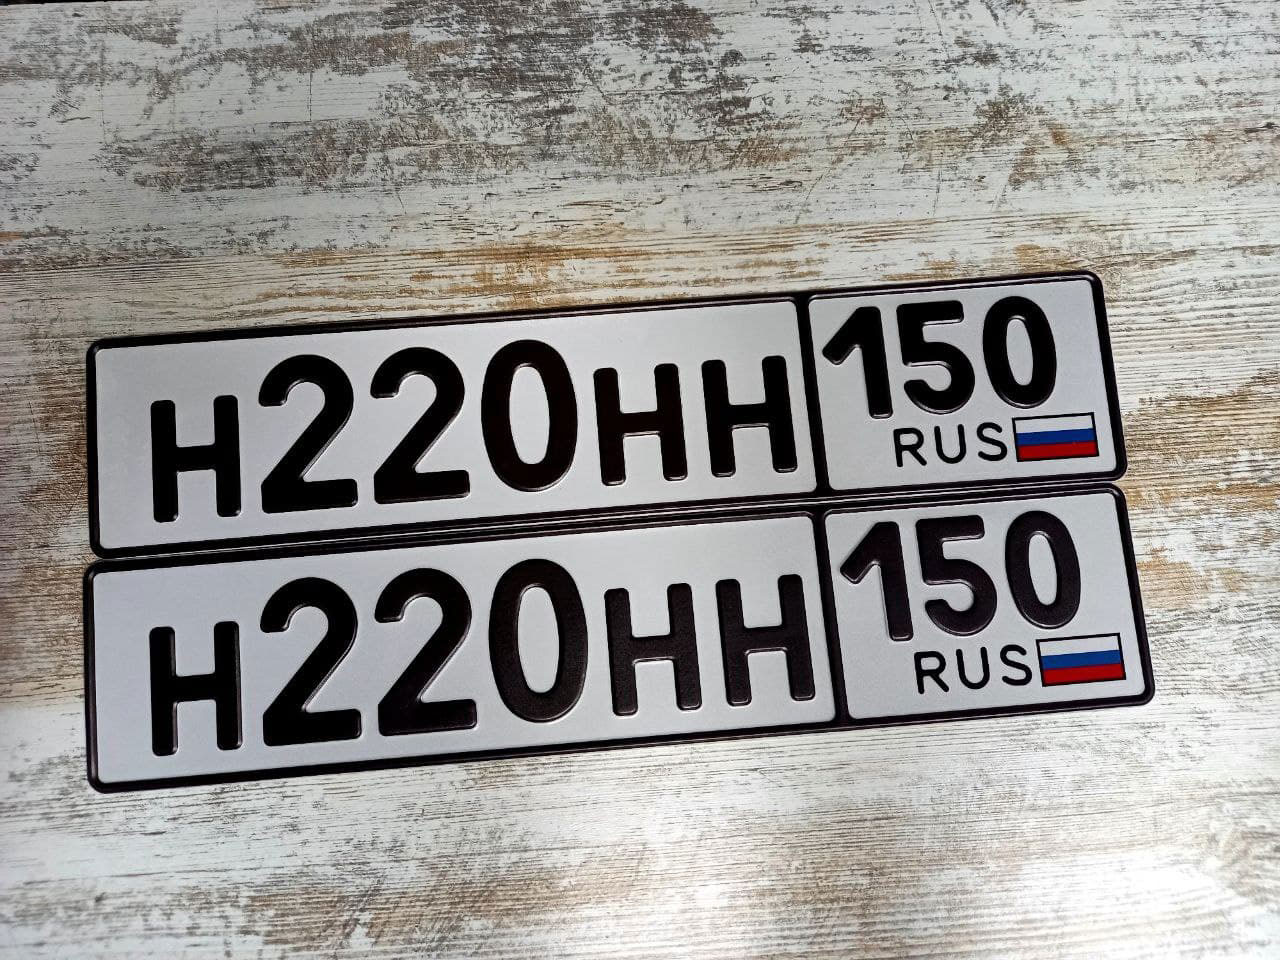 Дубликат гос номера жирным шрифтом на автомобиль с флагом РФ